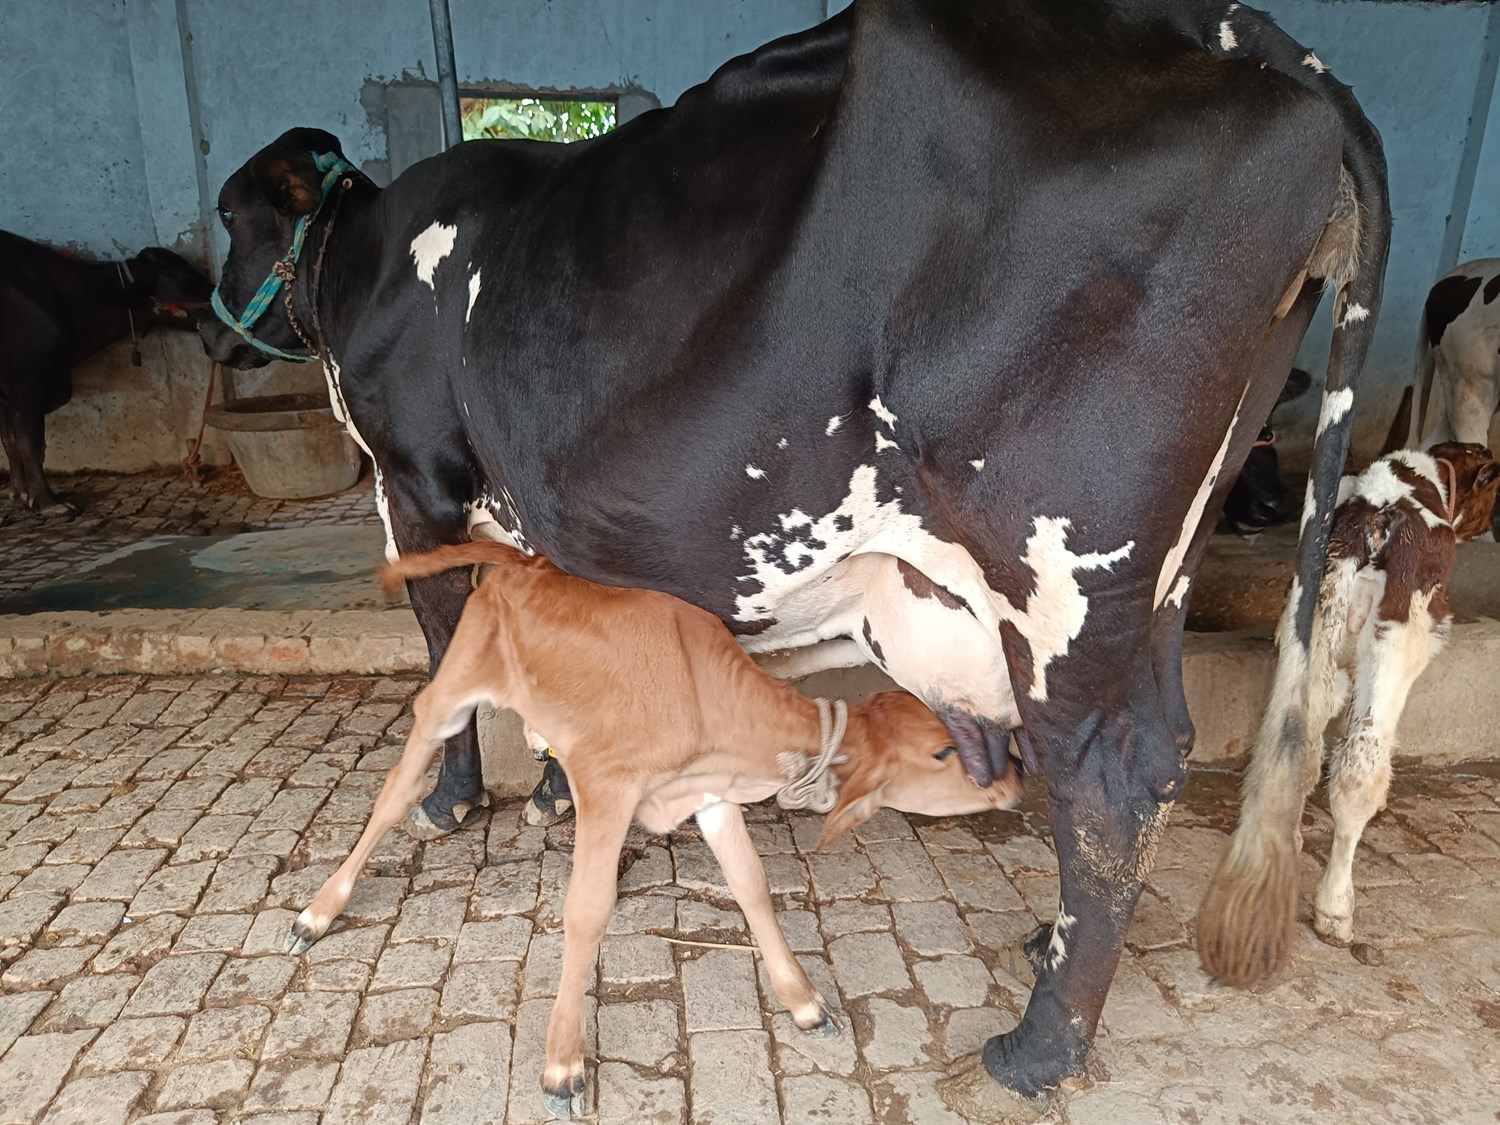 Dairy cow lactation management